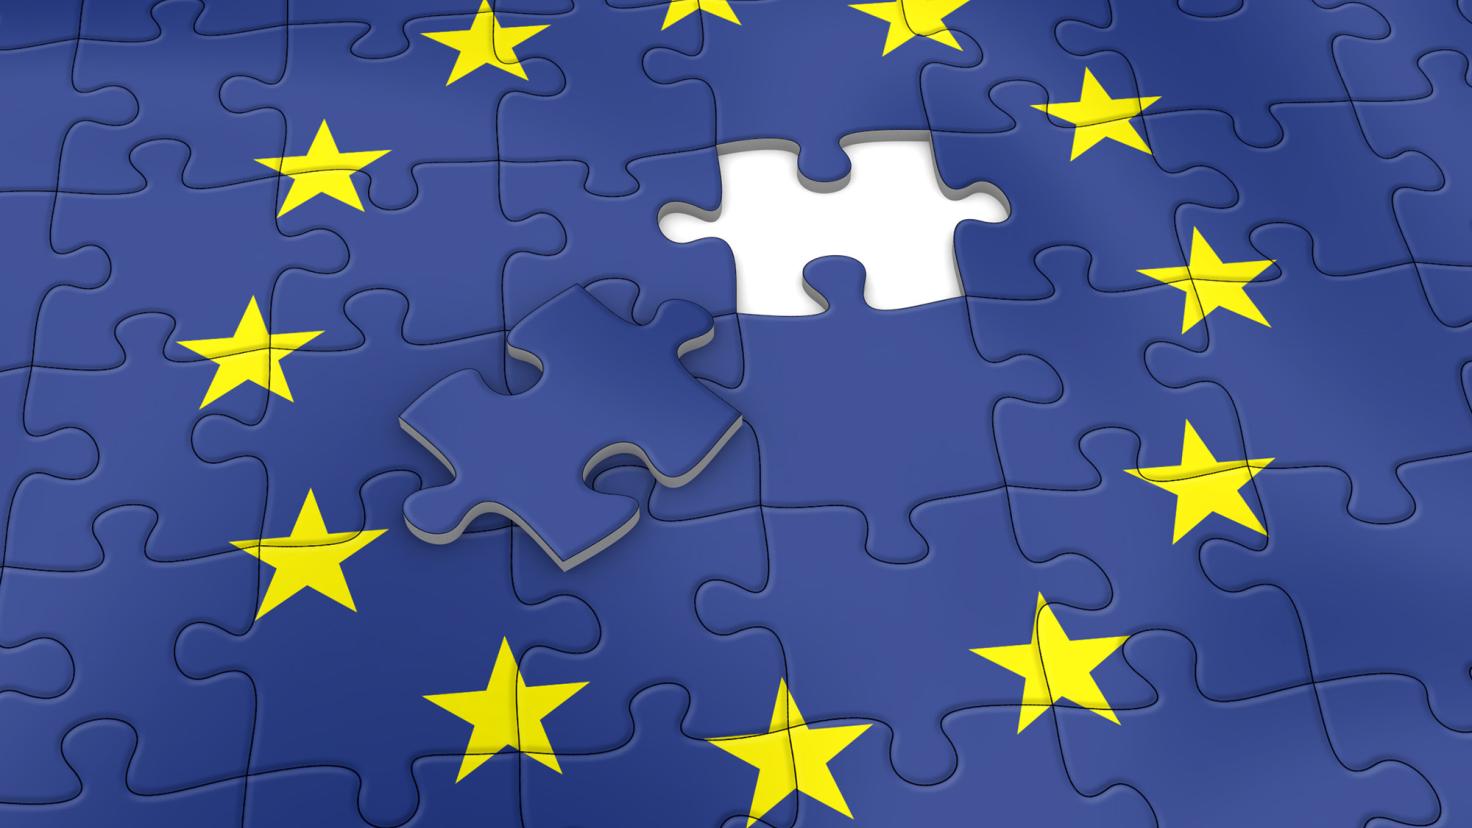 Das letzte Teil eines Puzzles der europäischen Flagge liegt auf den fertigen Teilen